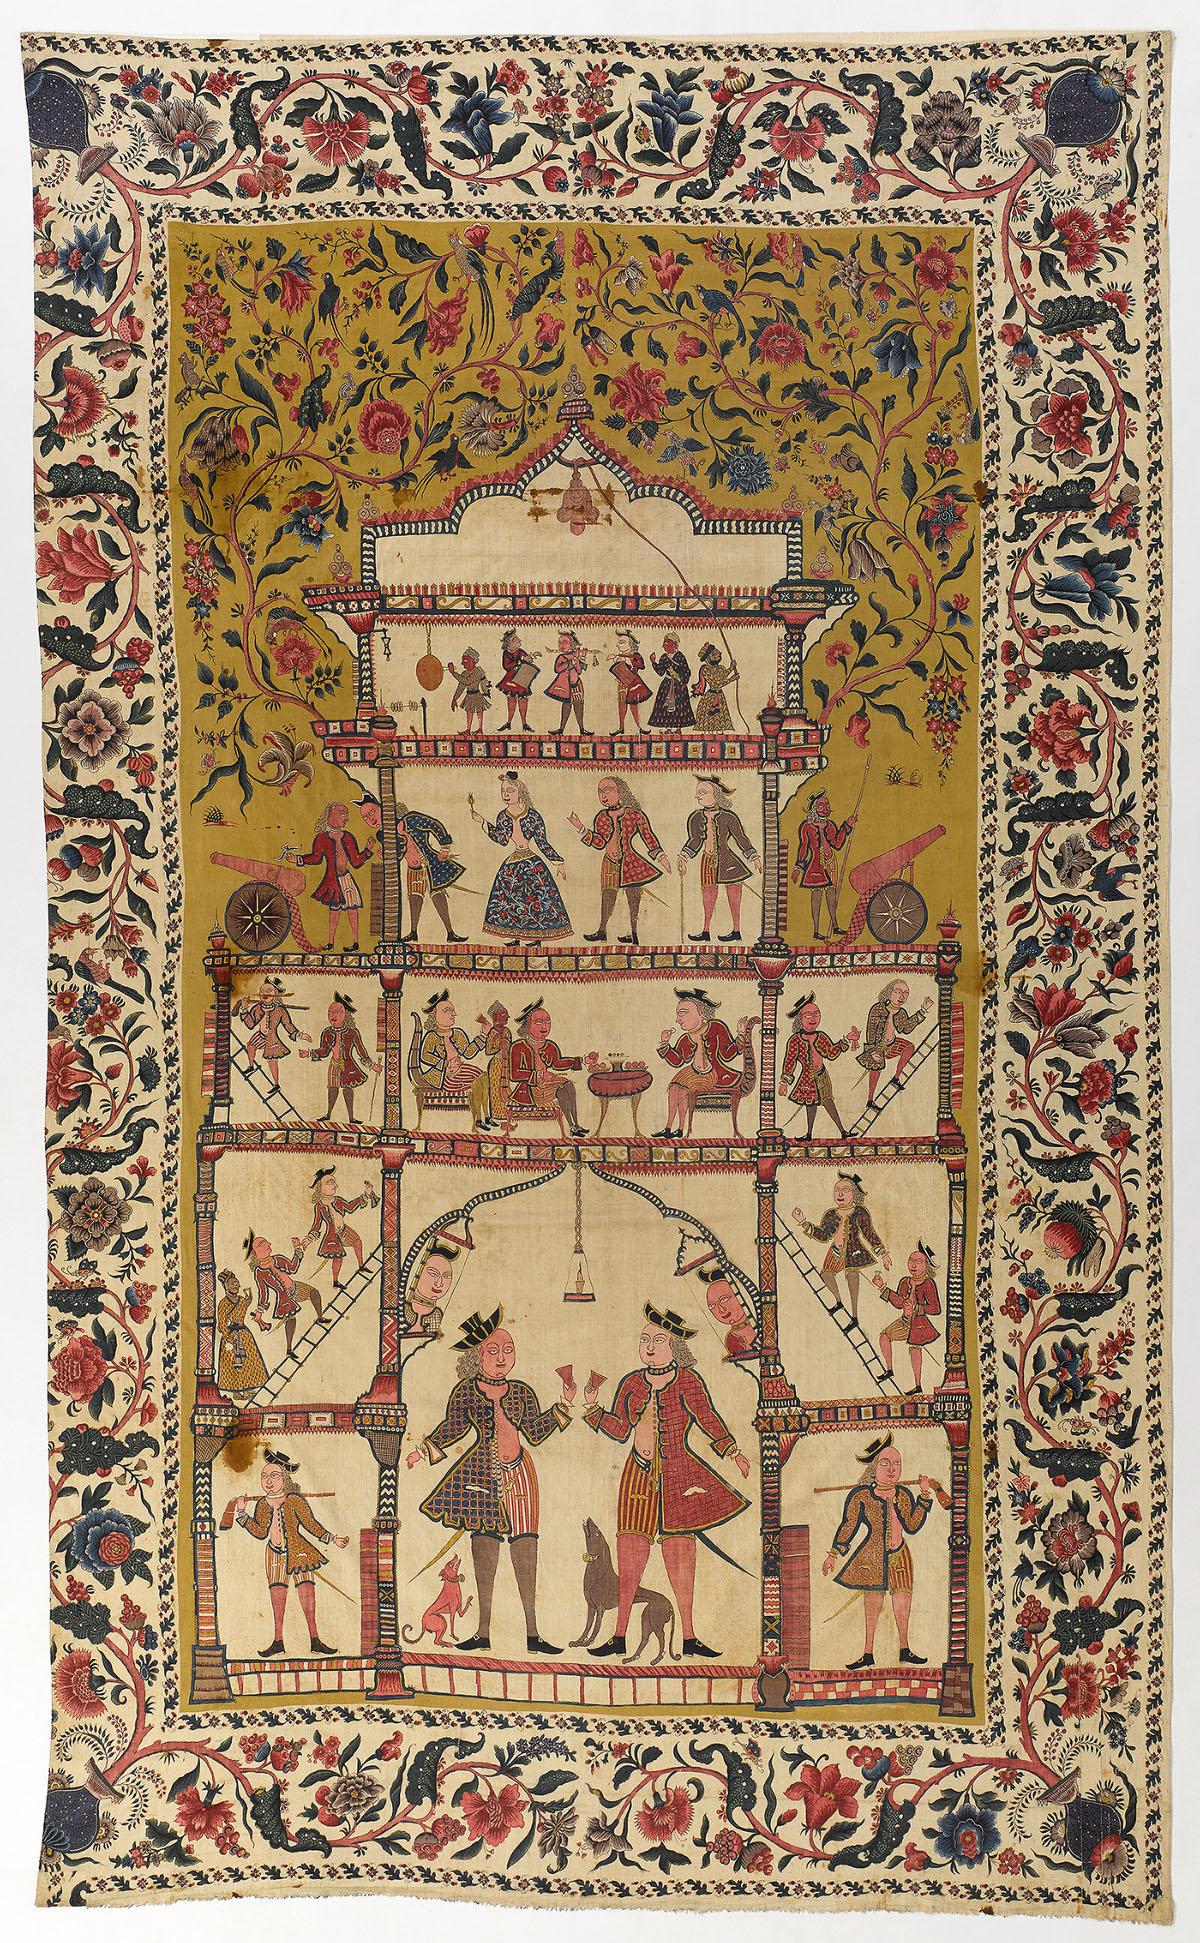 Un exemple d'"indienne" datant du XVIIIe siècle. [Musée national suisse]